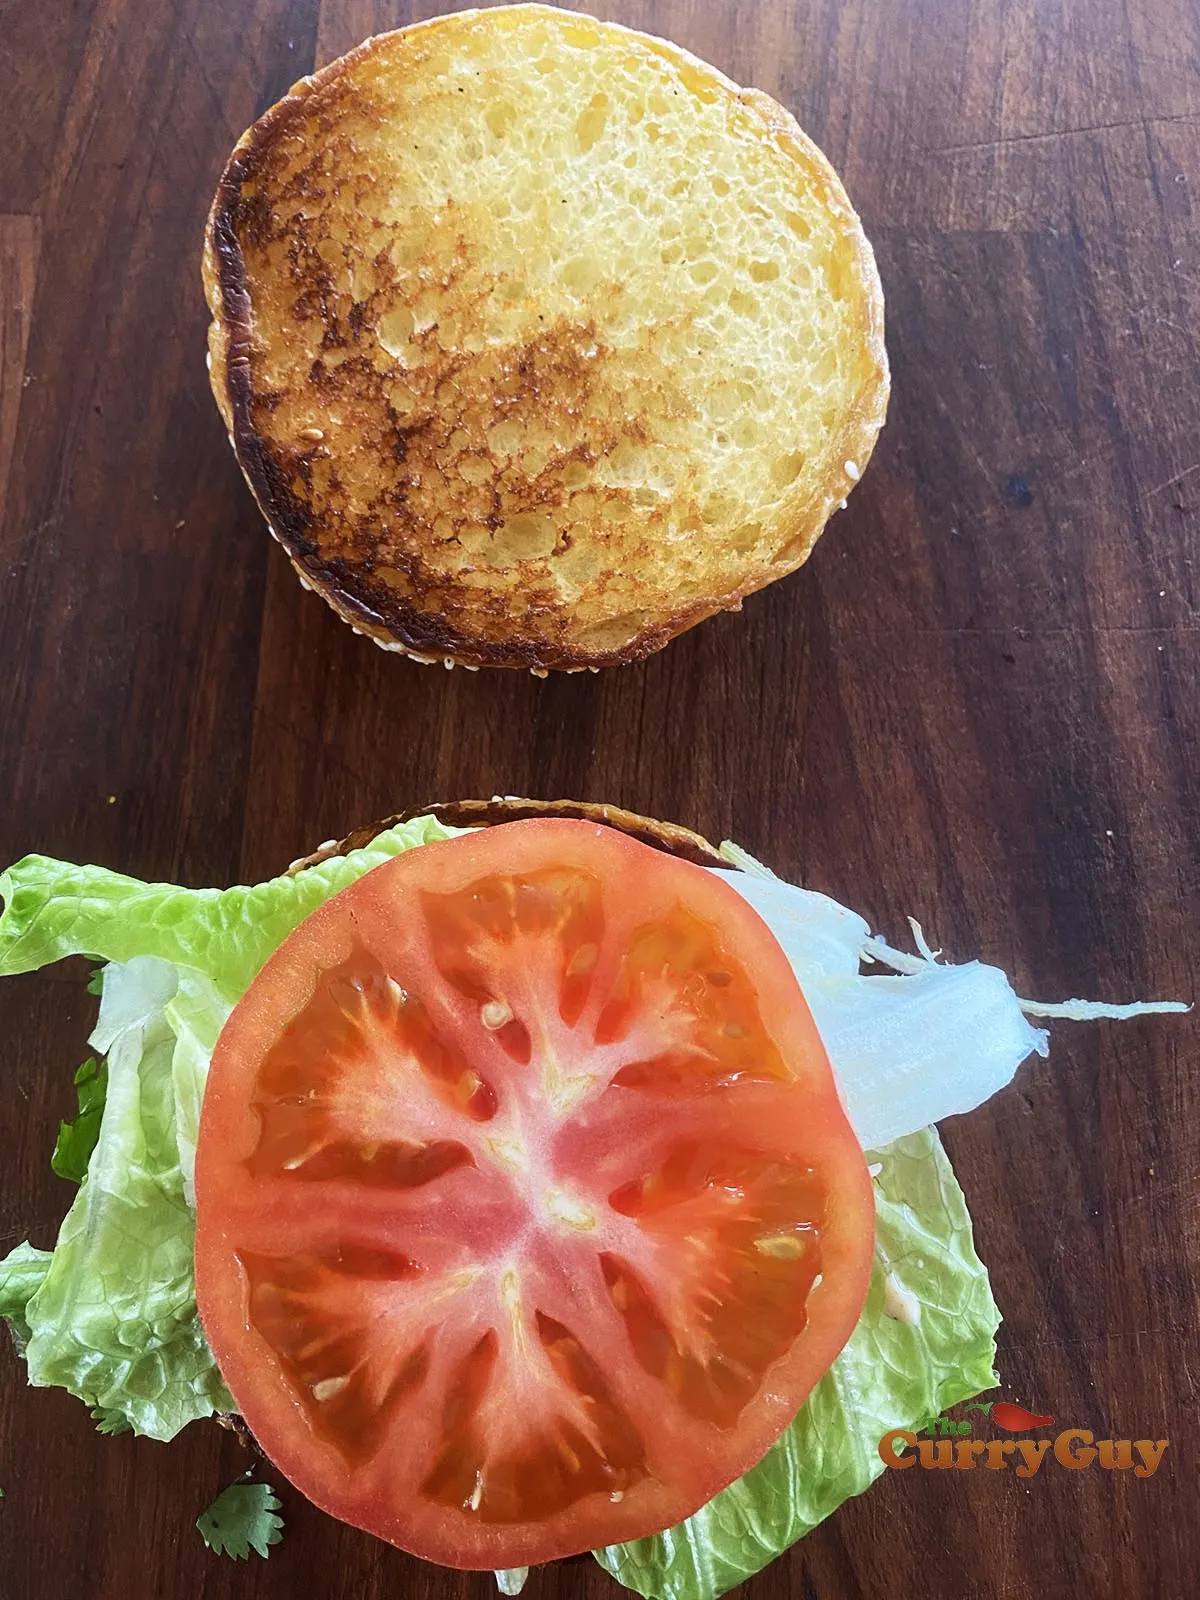 Adding tomato to burger